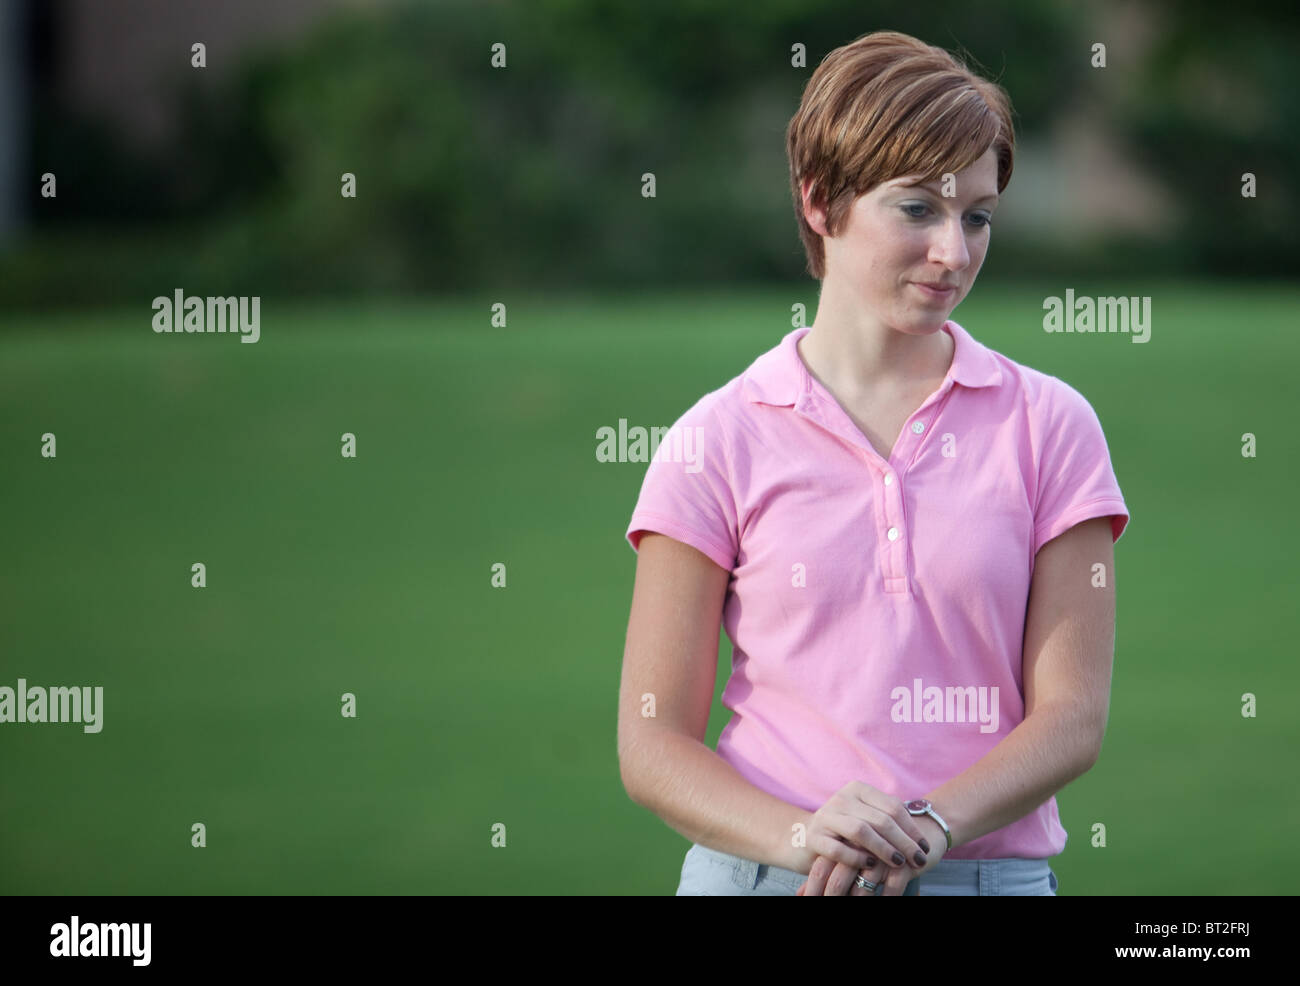 Signora giovane (femmina golfista) con corti capelli biondi e indossa una maglia rosa shirt attende il suo giro Foto Stock